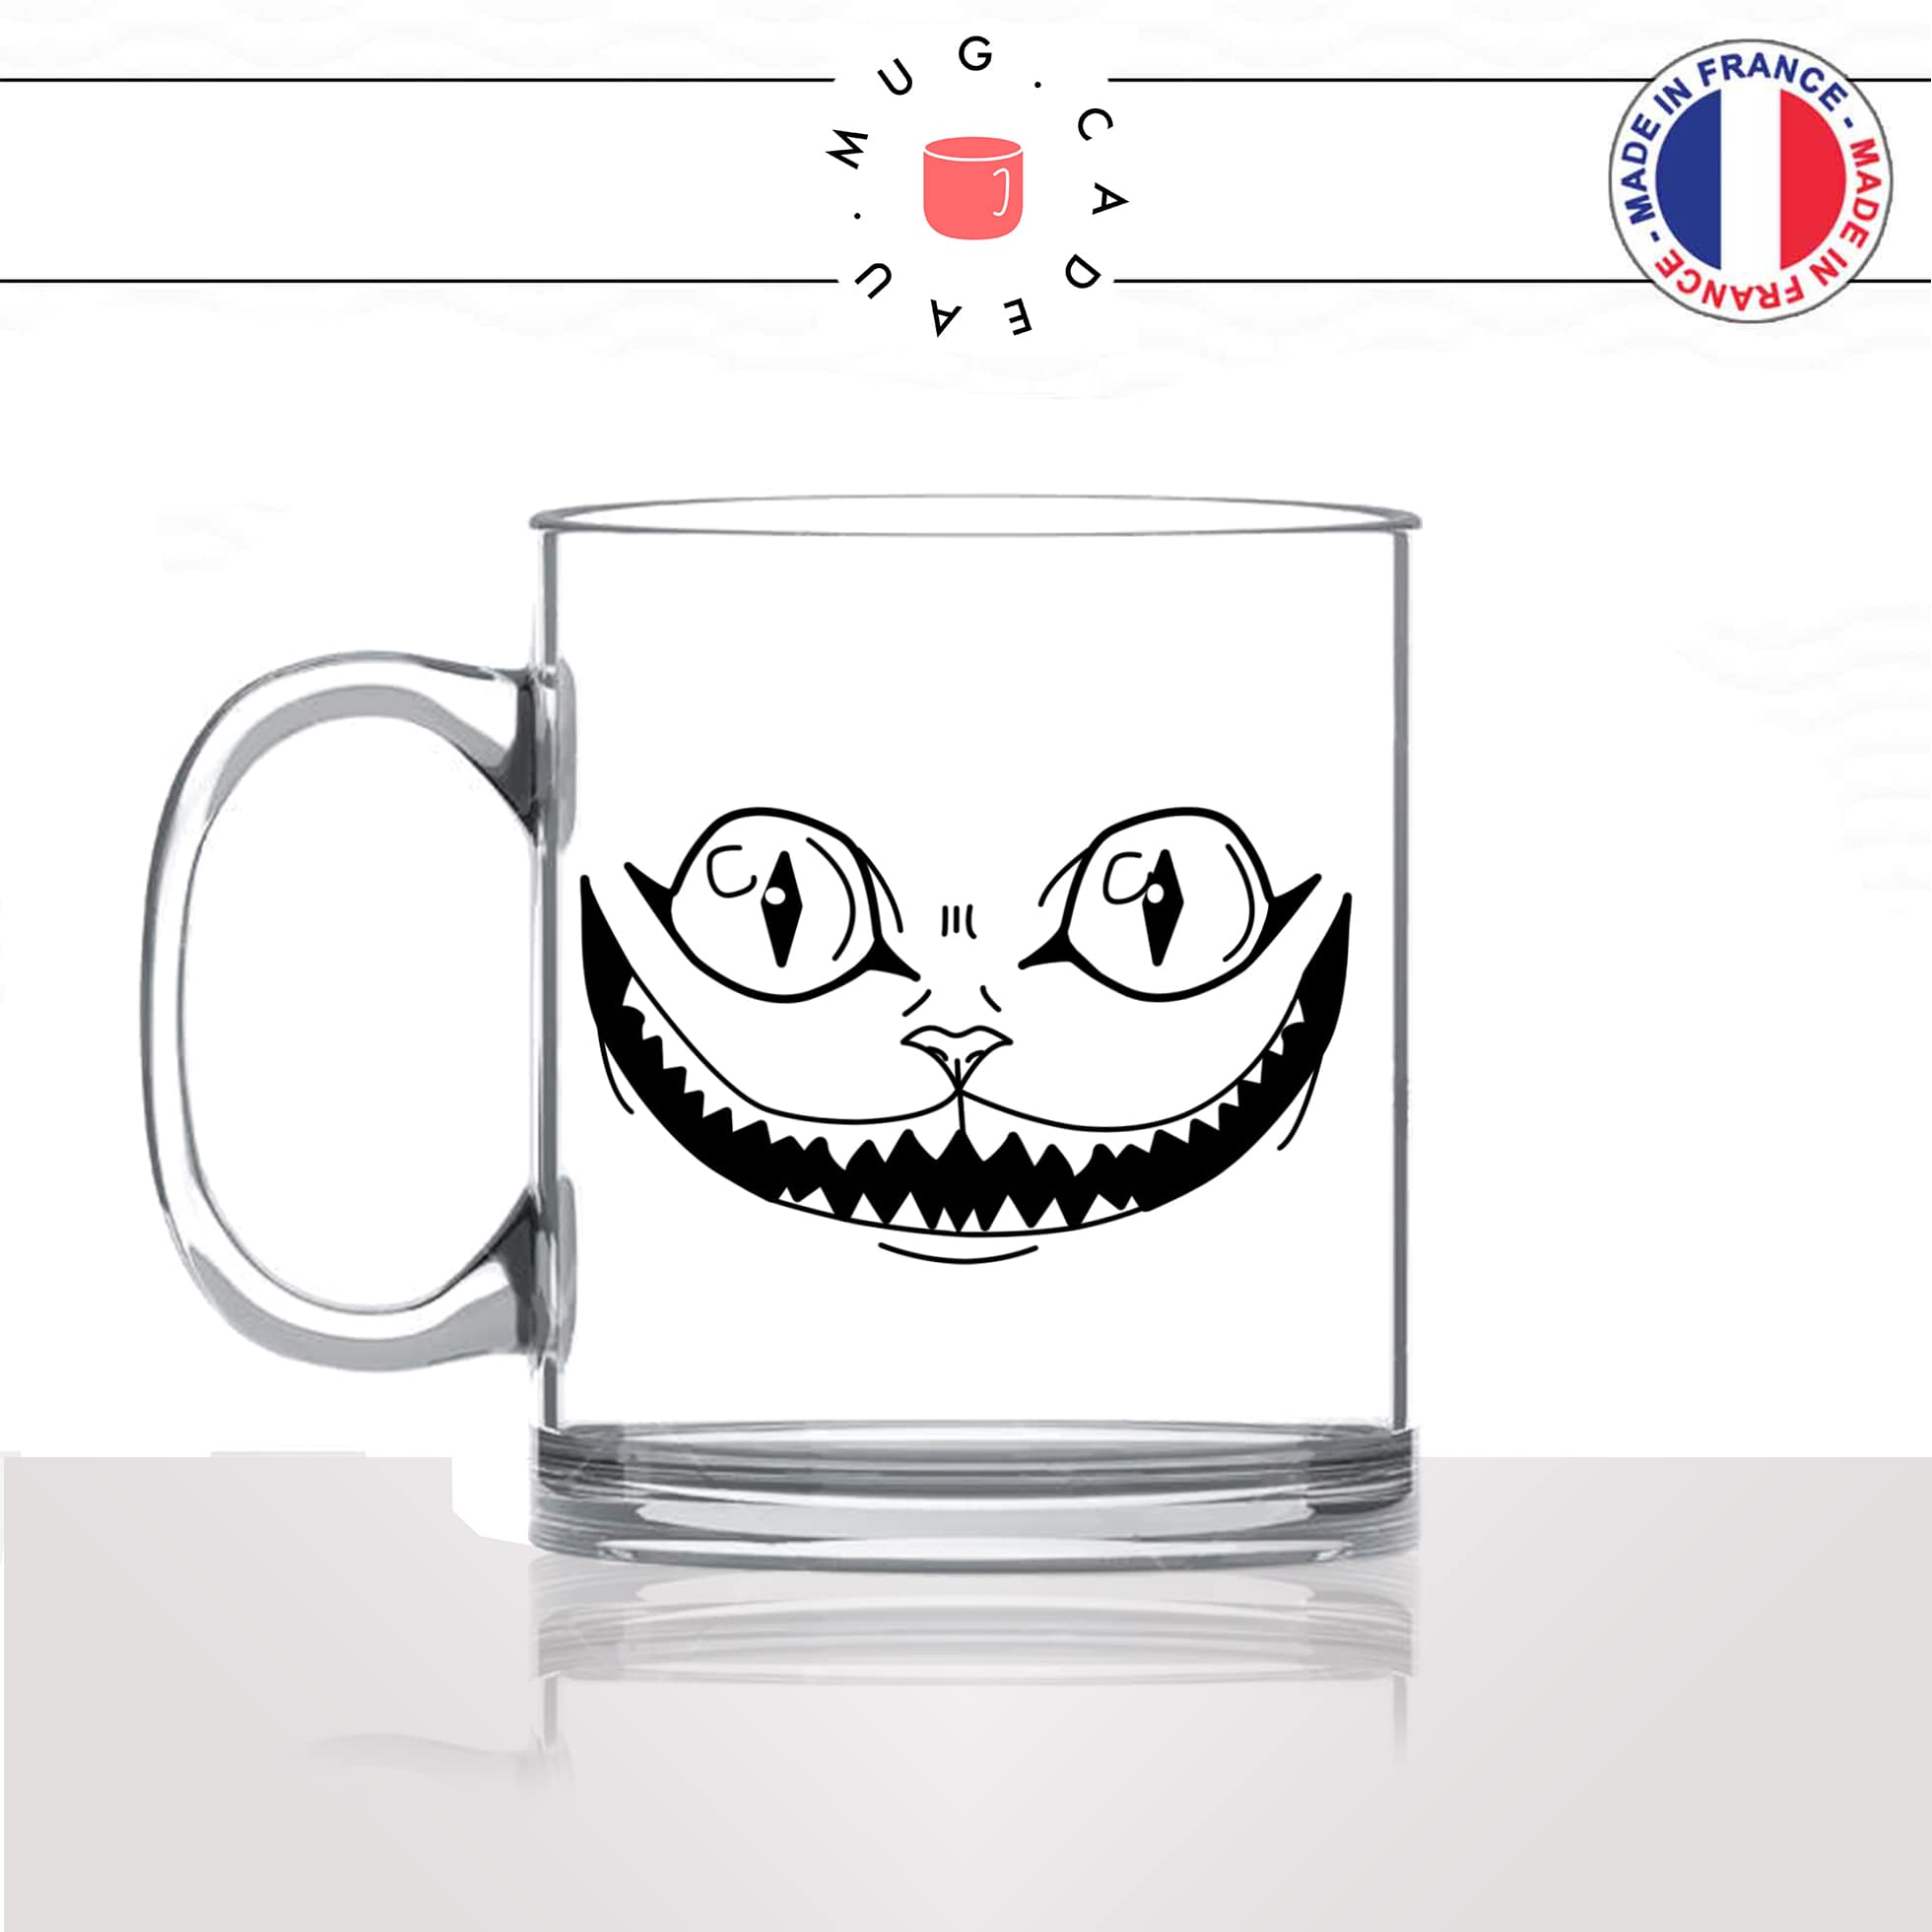 mug-tasse-en-verre-transparent-tete-de-chat-alice-au-pays-desmereveilles-mignon-animal-chaton-noir-fun-café-thé-idée-cadeau-original-personnalisé-min